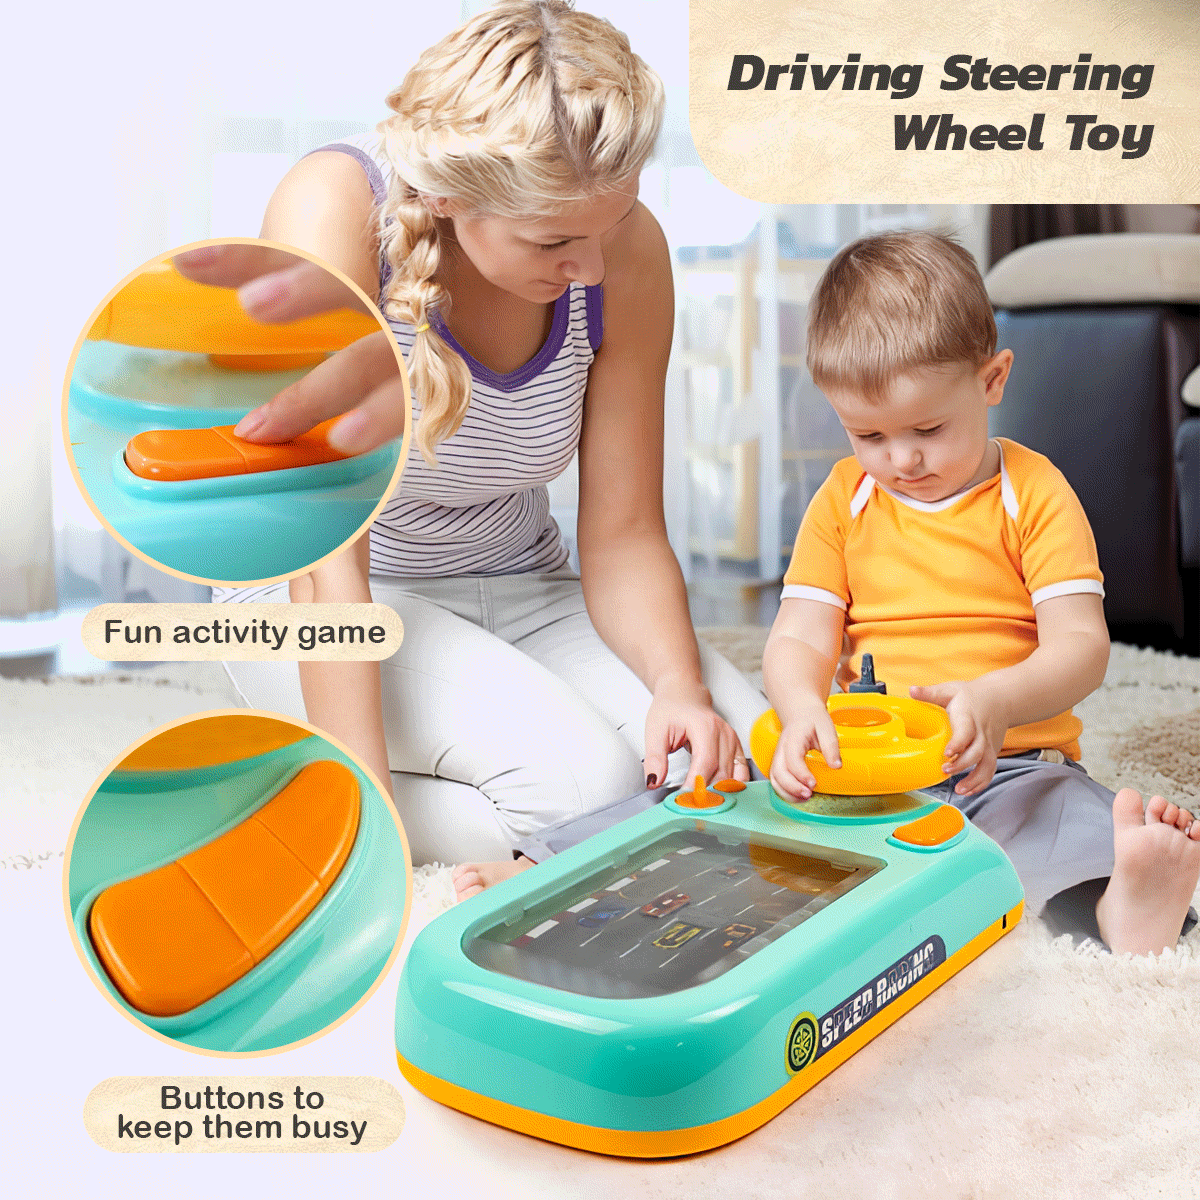 Driving Steering Wheel Toy